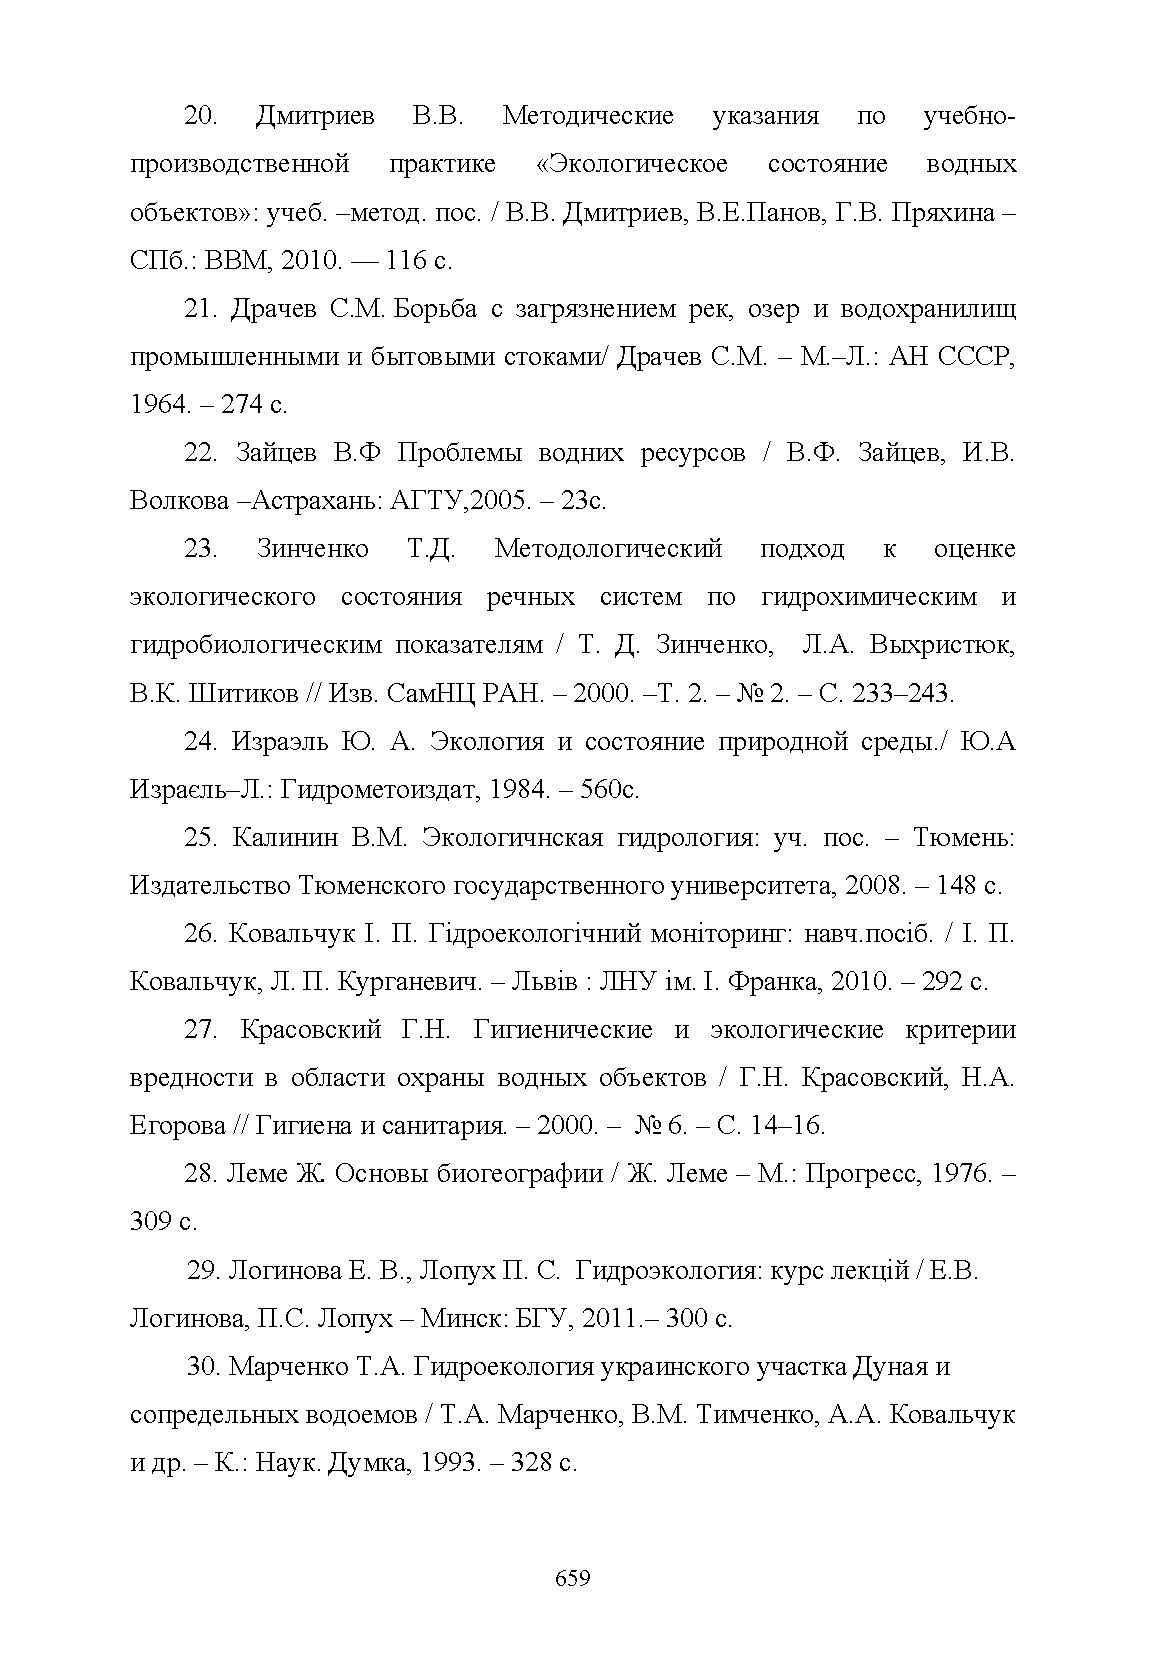 Гідроекологія  (2019 год). Автор — Кірєєва І. Ю.. 